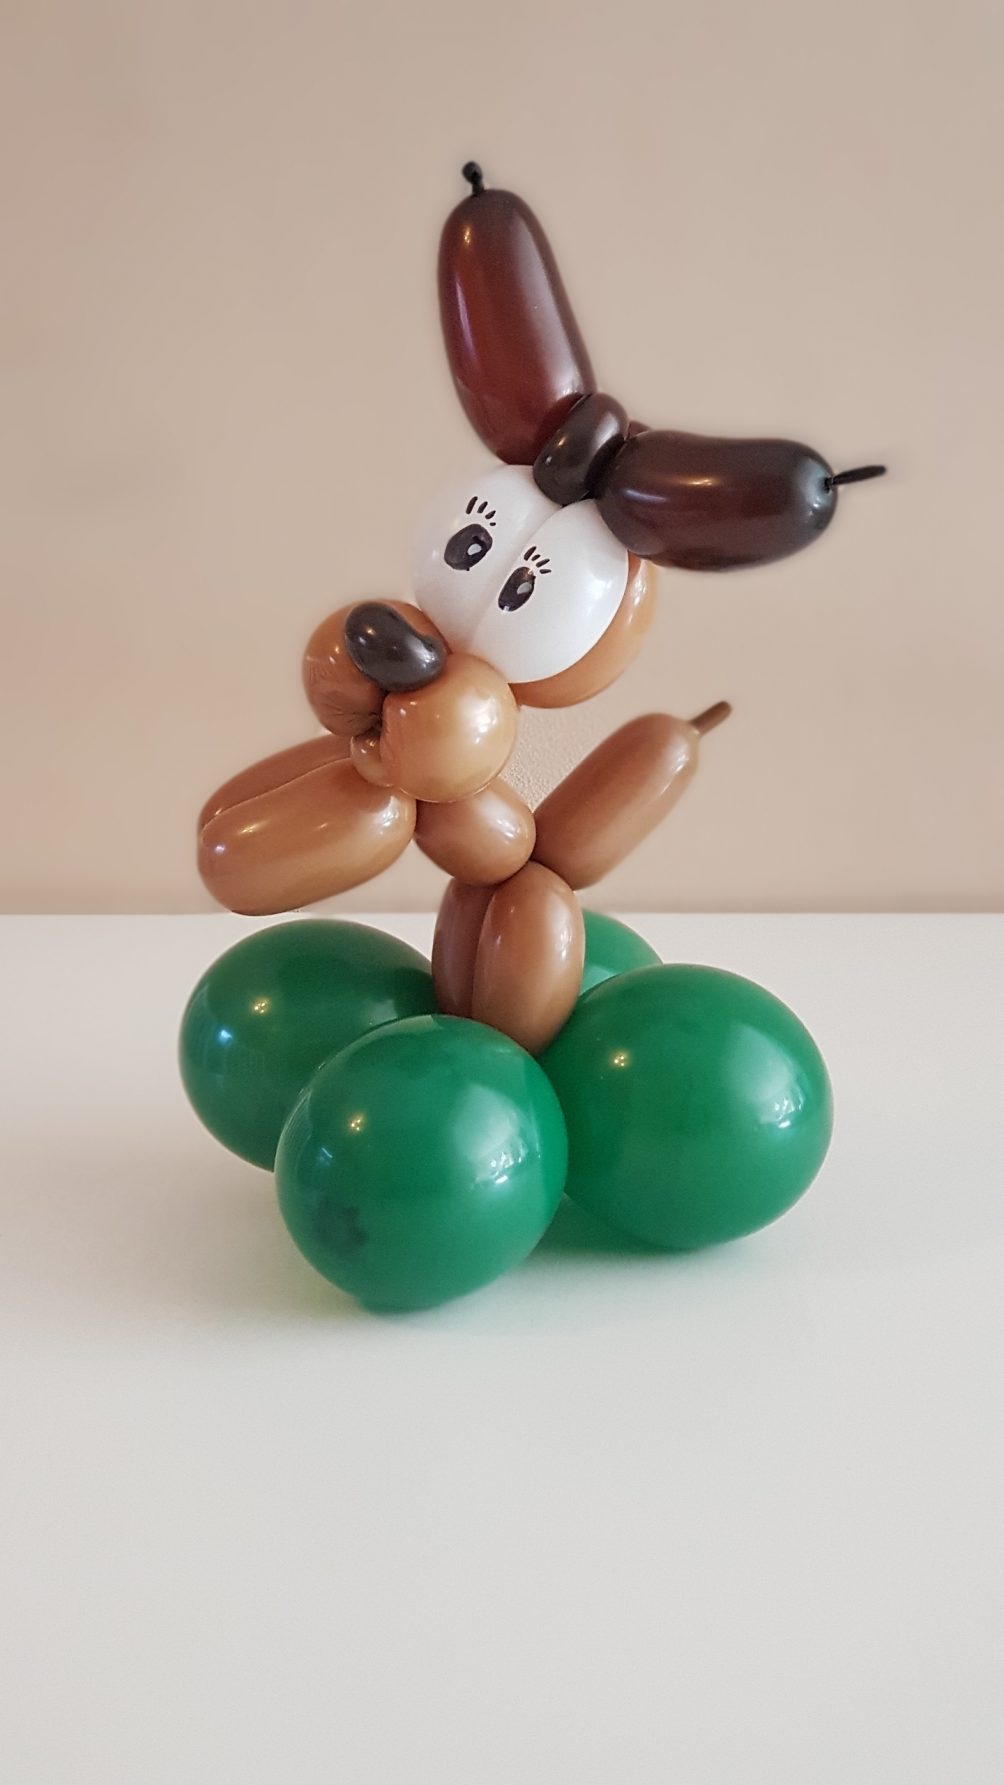 Dog Pudel Hund Mischling aus Modellierballons. Modellierballons vom Profi